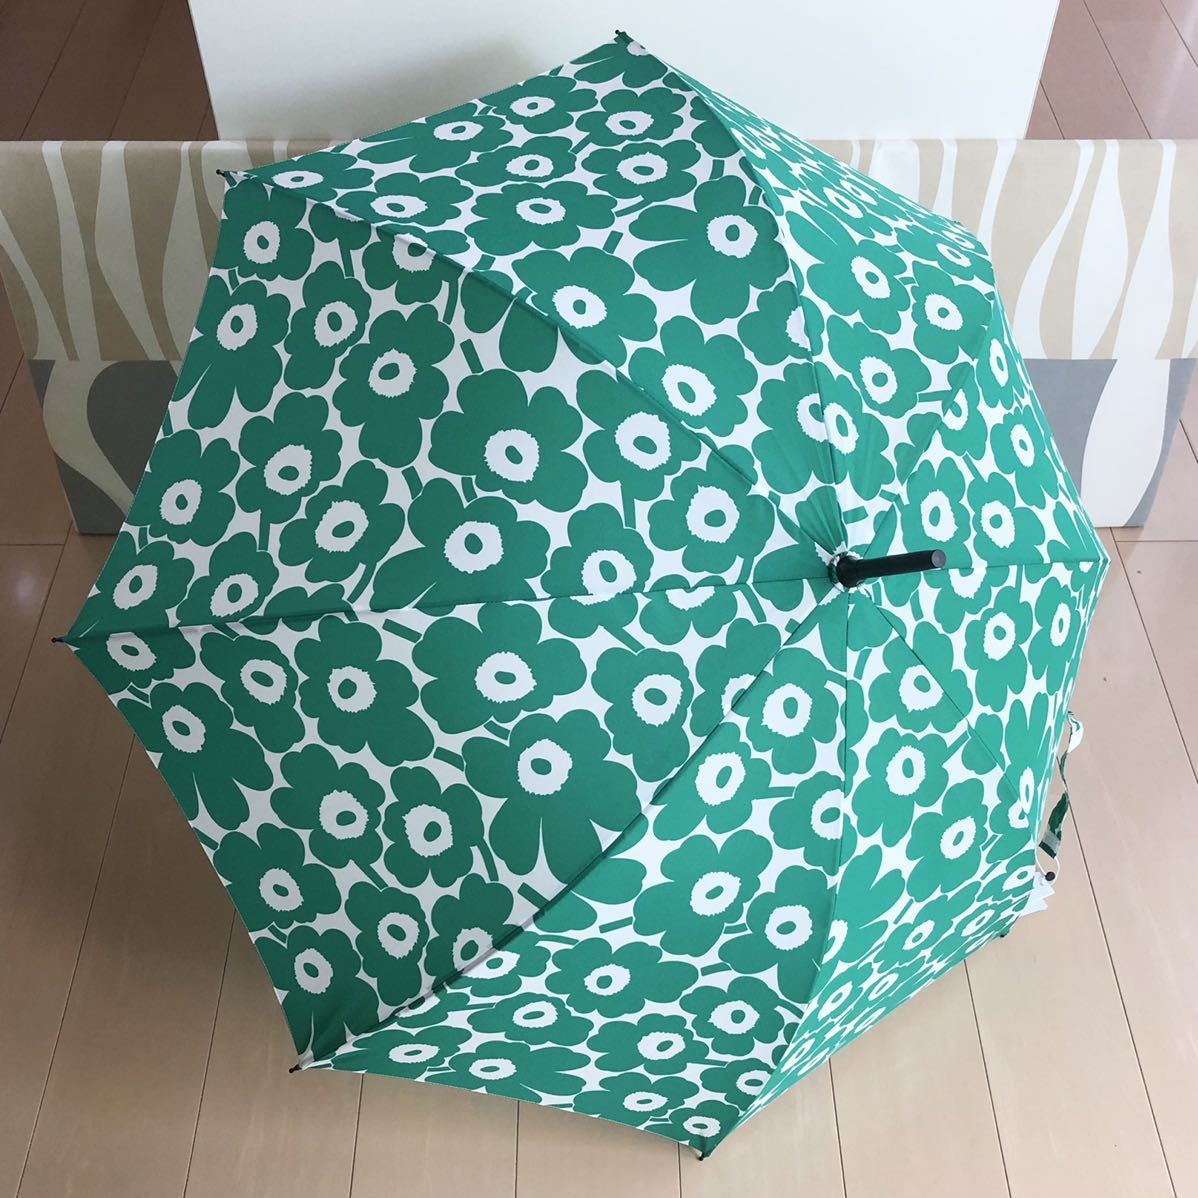  внутренний стандартный товар новый товар marimekko Stick Mini Unikko Marimekko длинный зонт зеленый одним движением 